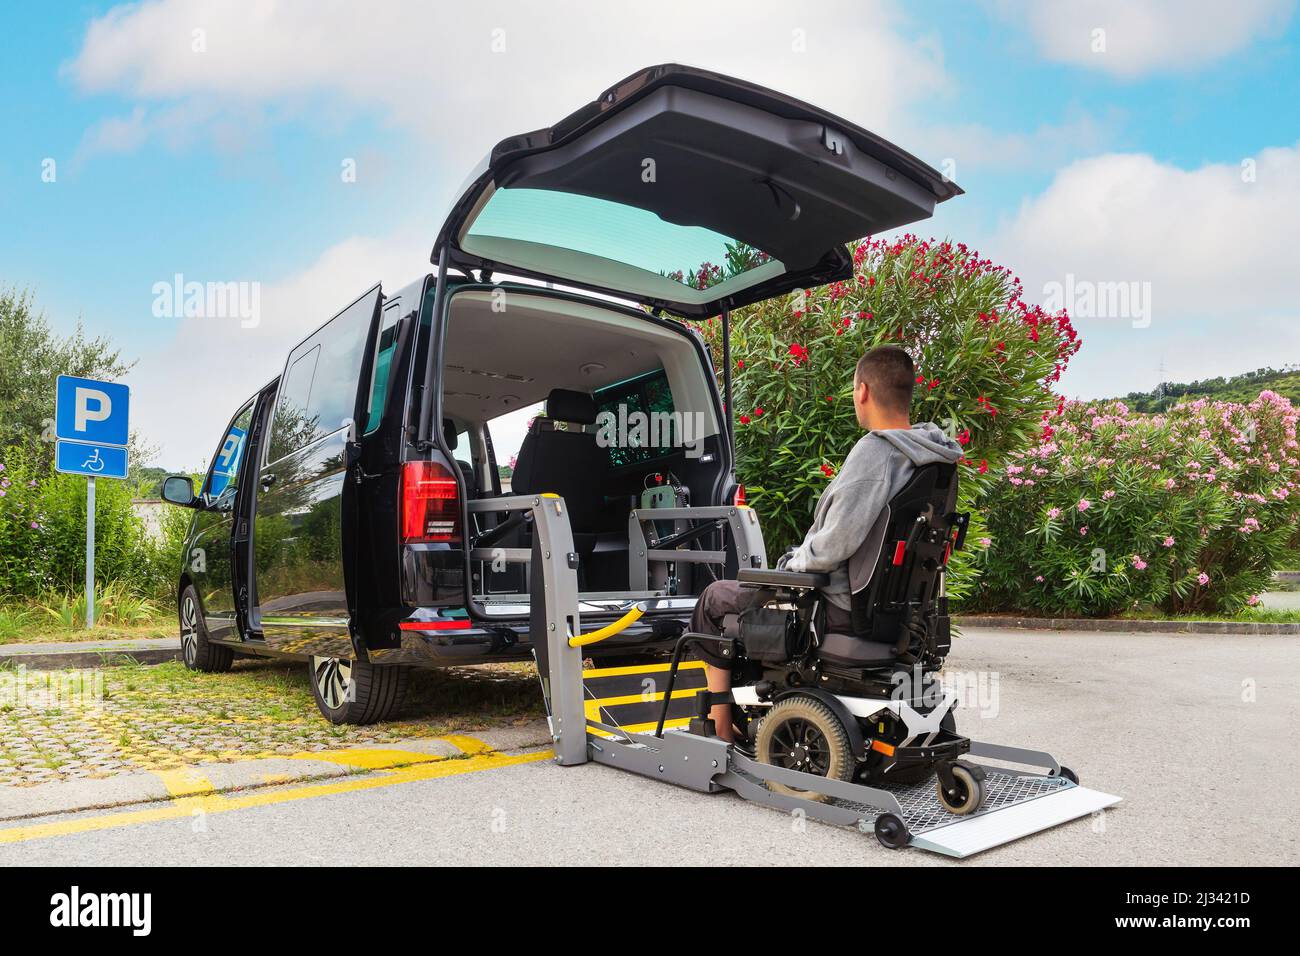 Voiture accessible avec rampe de levage pour fauteuils roulants pour  personnes handicapées Photo Stock - Alamy